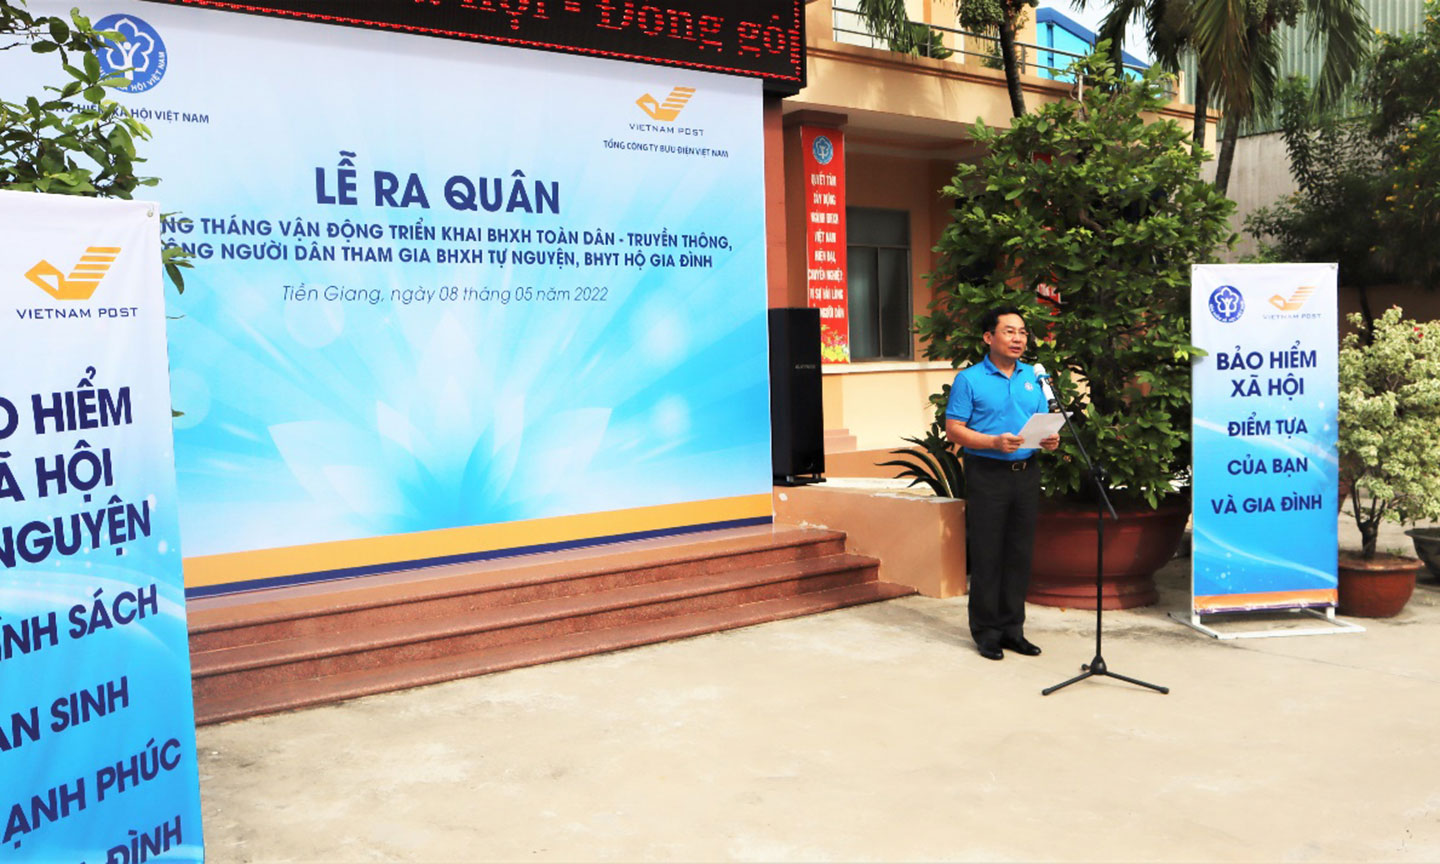 Ông Võ Khánh Bình, Giám đốc BHXH tỉnh, truyền thông điệp và hô khẩu hiệu   trong buổi lễ ra quân.